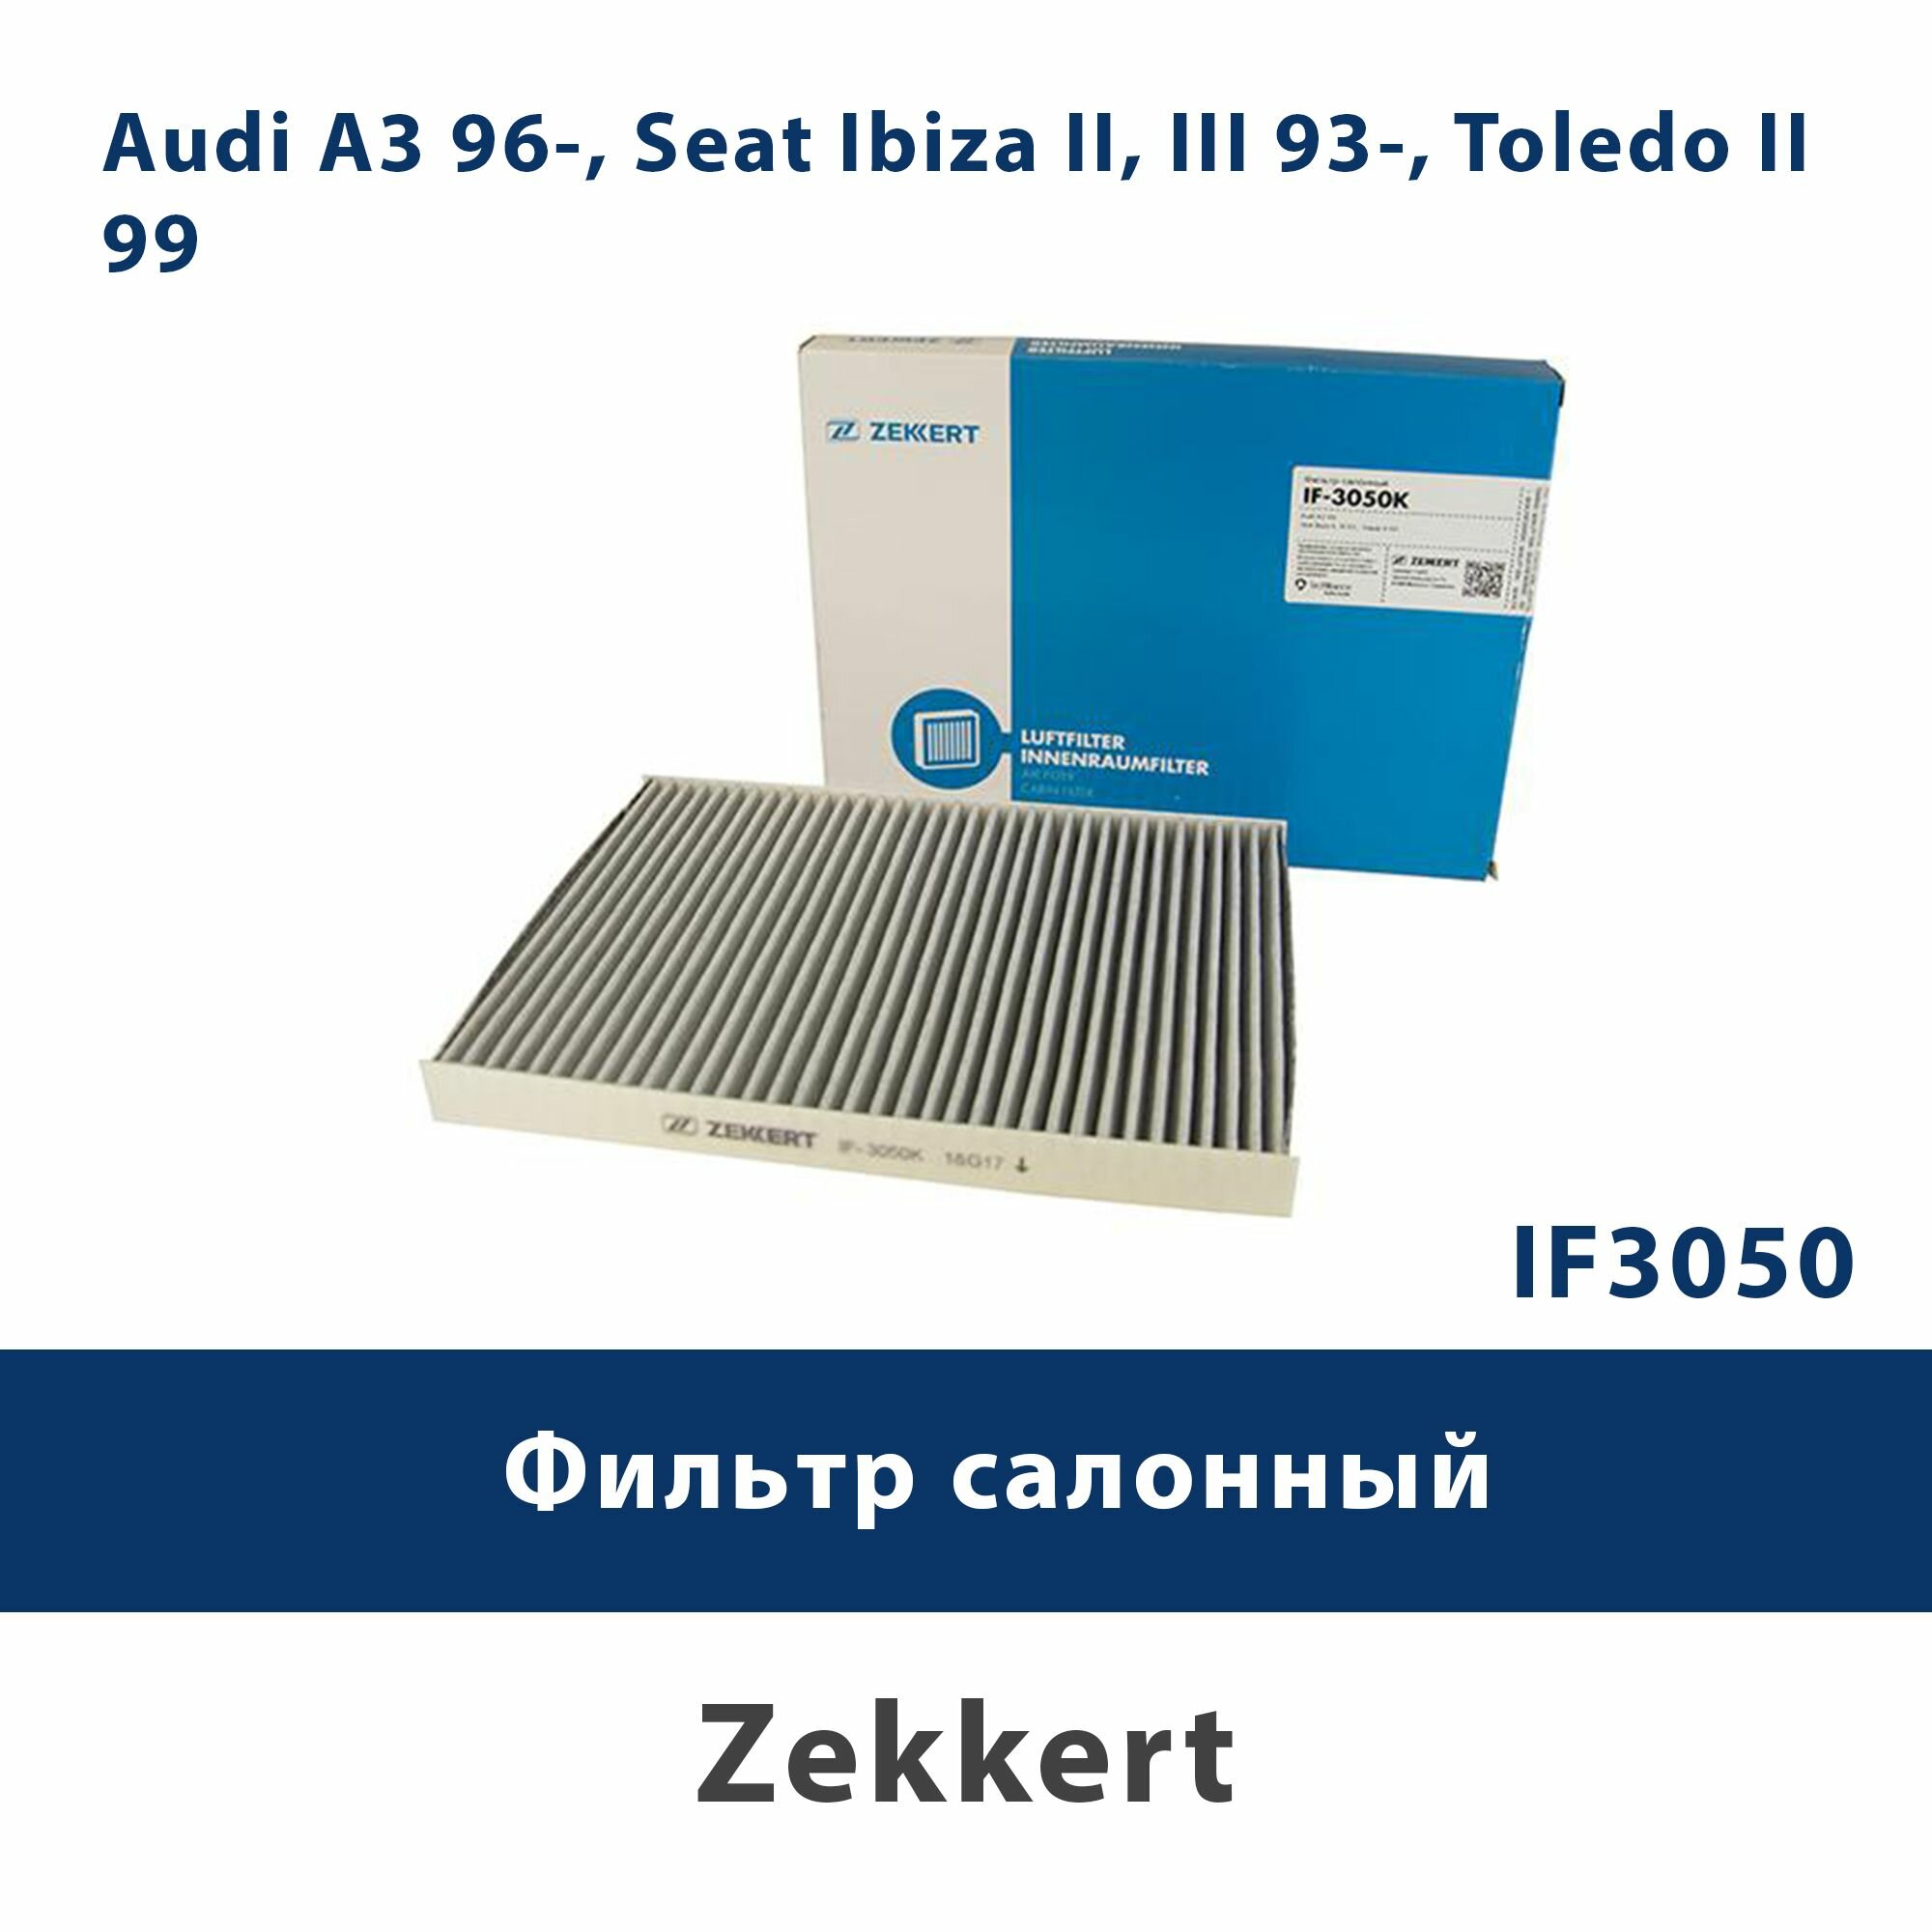 Фильтр салонный Audi A3 96-, Seat Ibiza II, III 93-, Toledo II 99- ZEKKERT IF3050